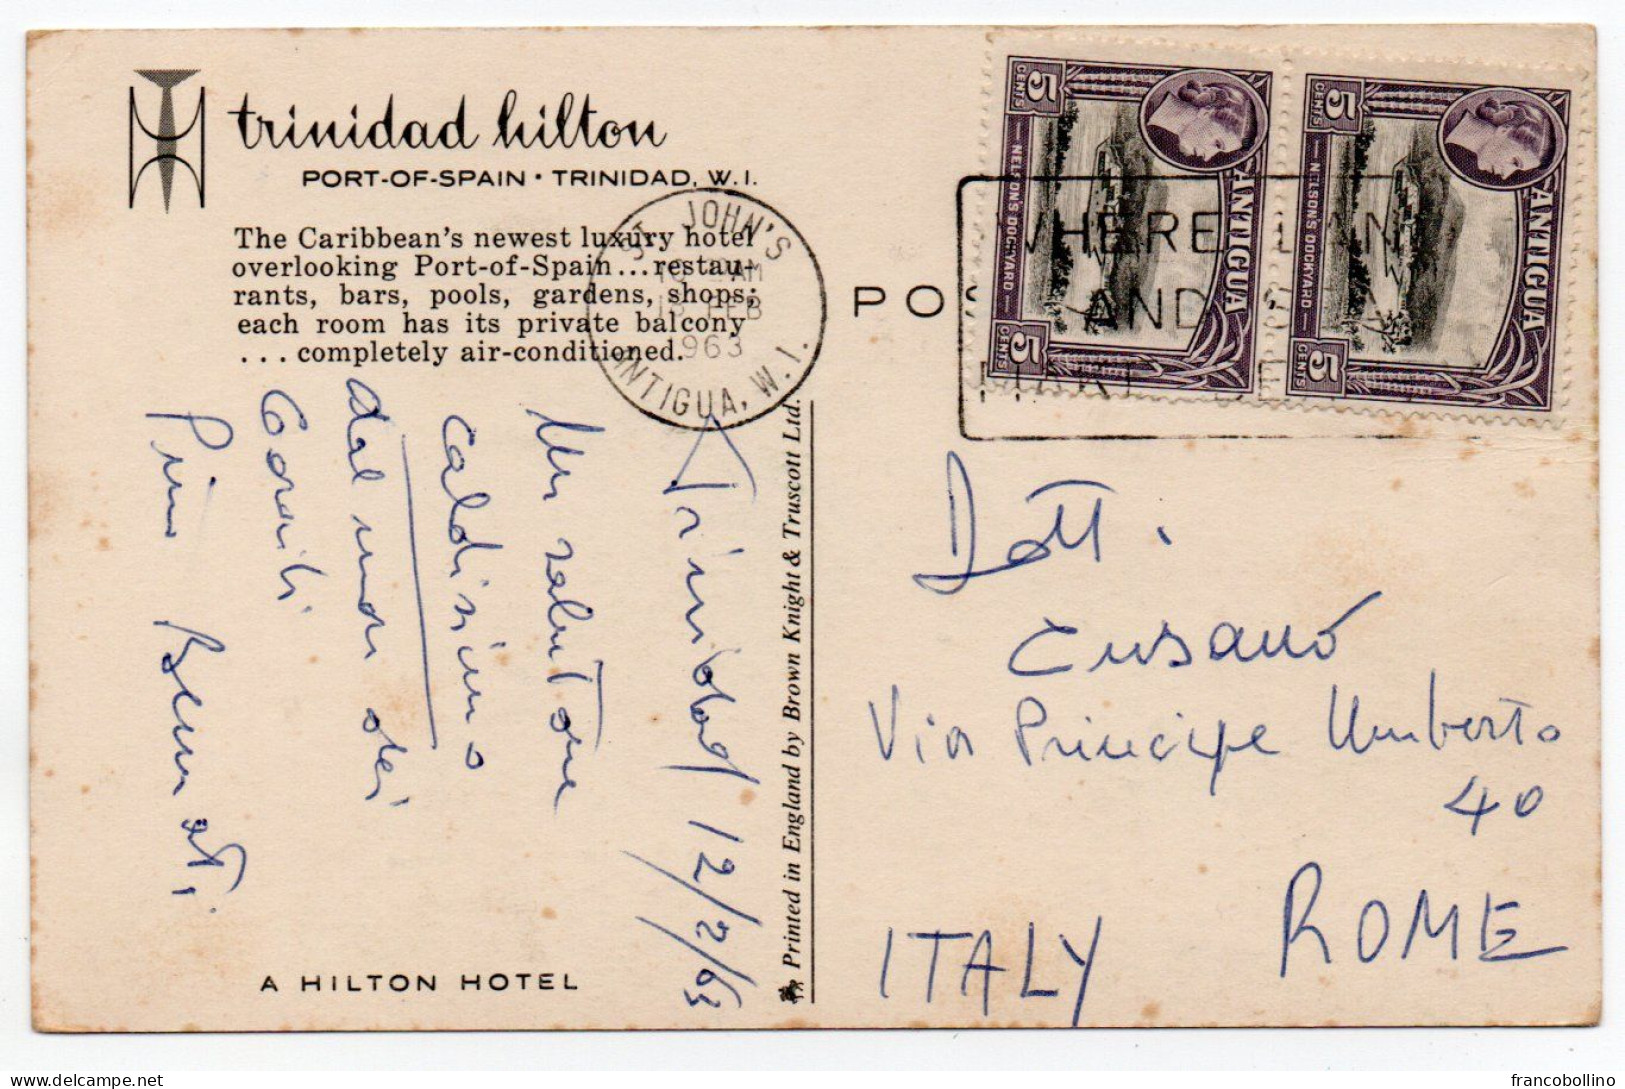 TRINIDAD & TOBAGO - WEST INDIES - TRINIDAD HILTON PORT OF SPAIN,TRINIDAD / HOTEL / WITH ANTIGUA STAMPS 1963 - Trinidad